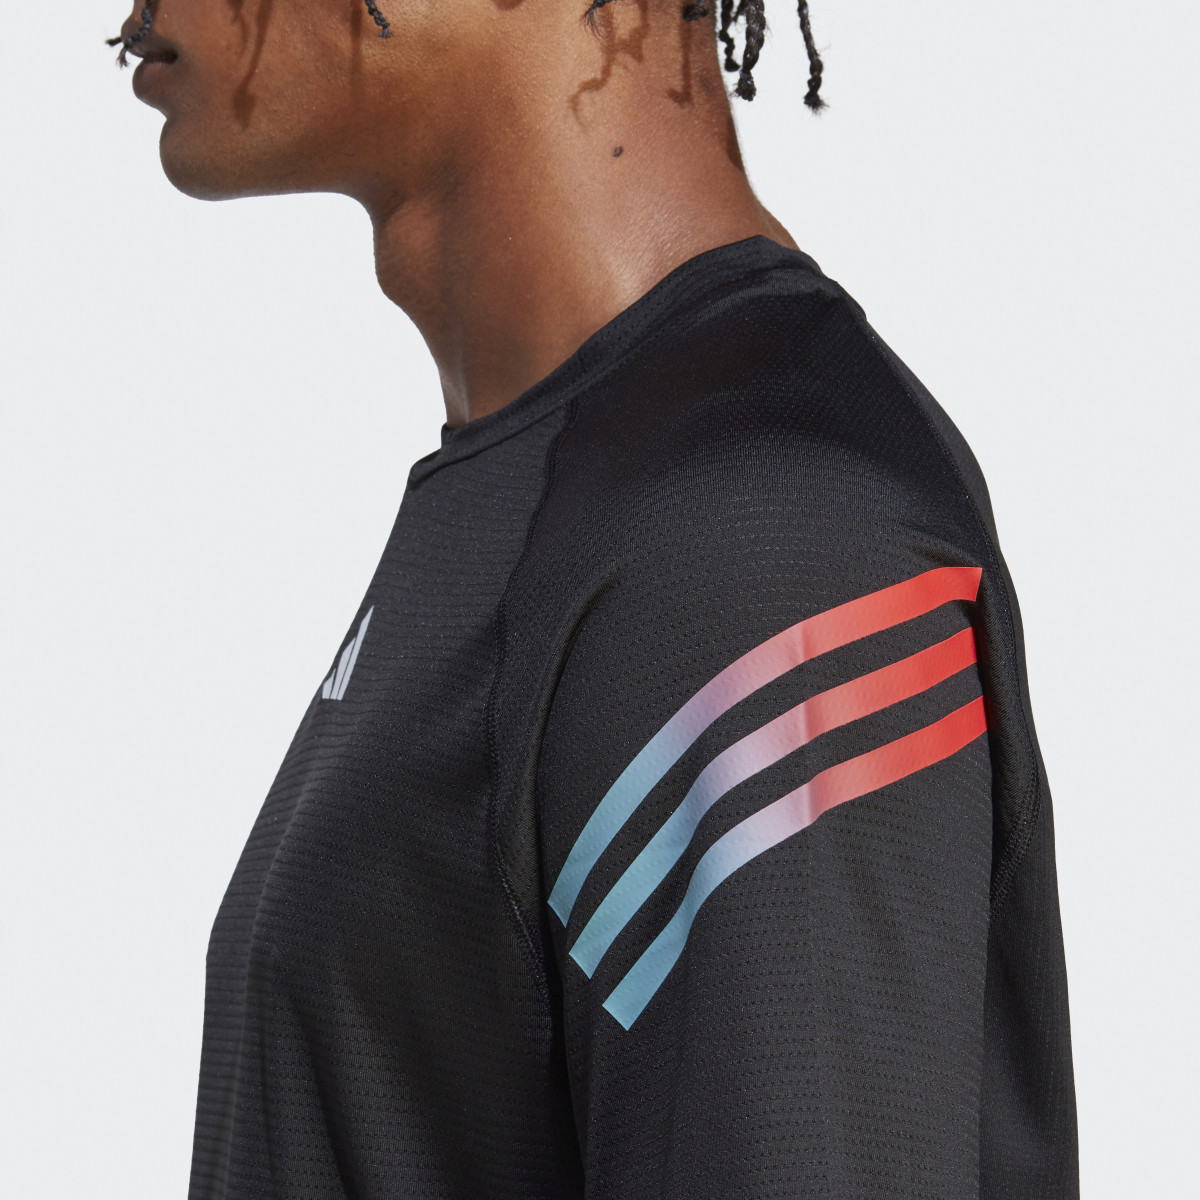 Adidas Train Icons 3-Stripes Training T-Shirt. 7